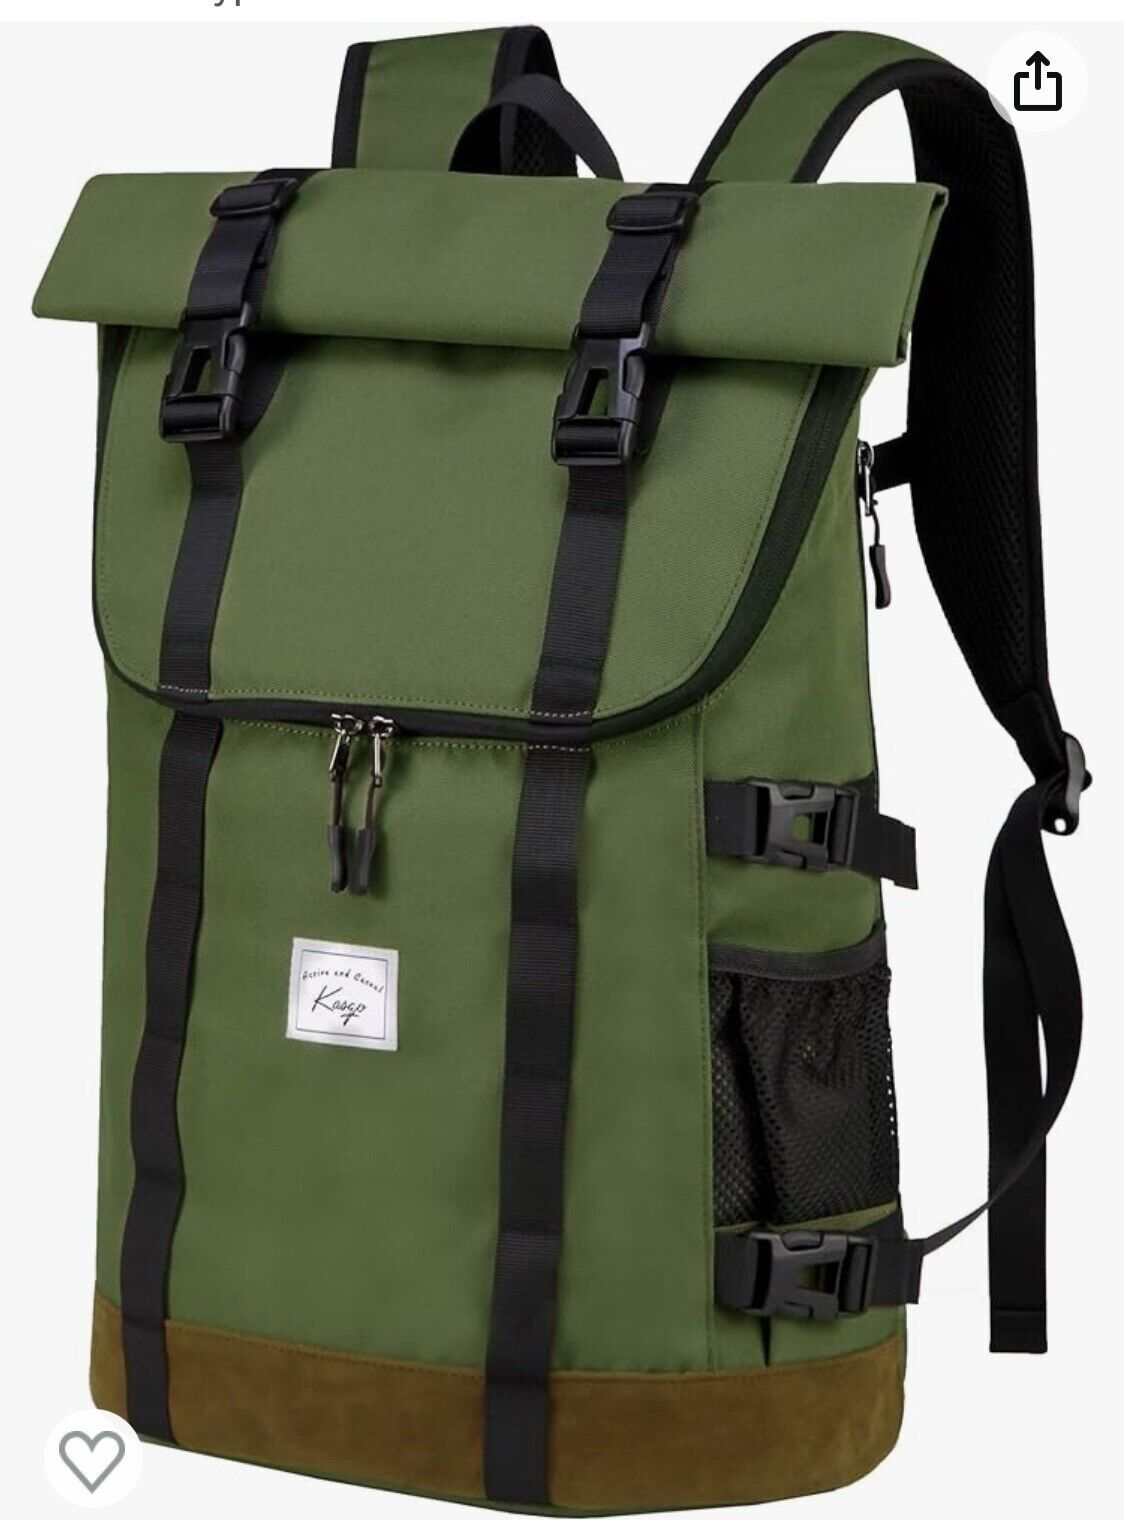 Kasgo Laptop Backpack 17in Roll top Large Capacity Water Resistant